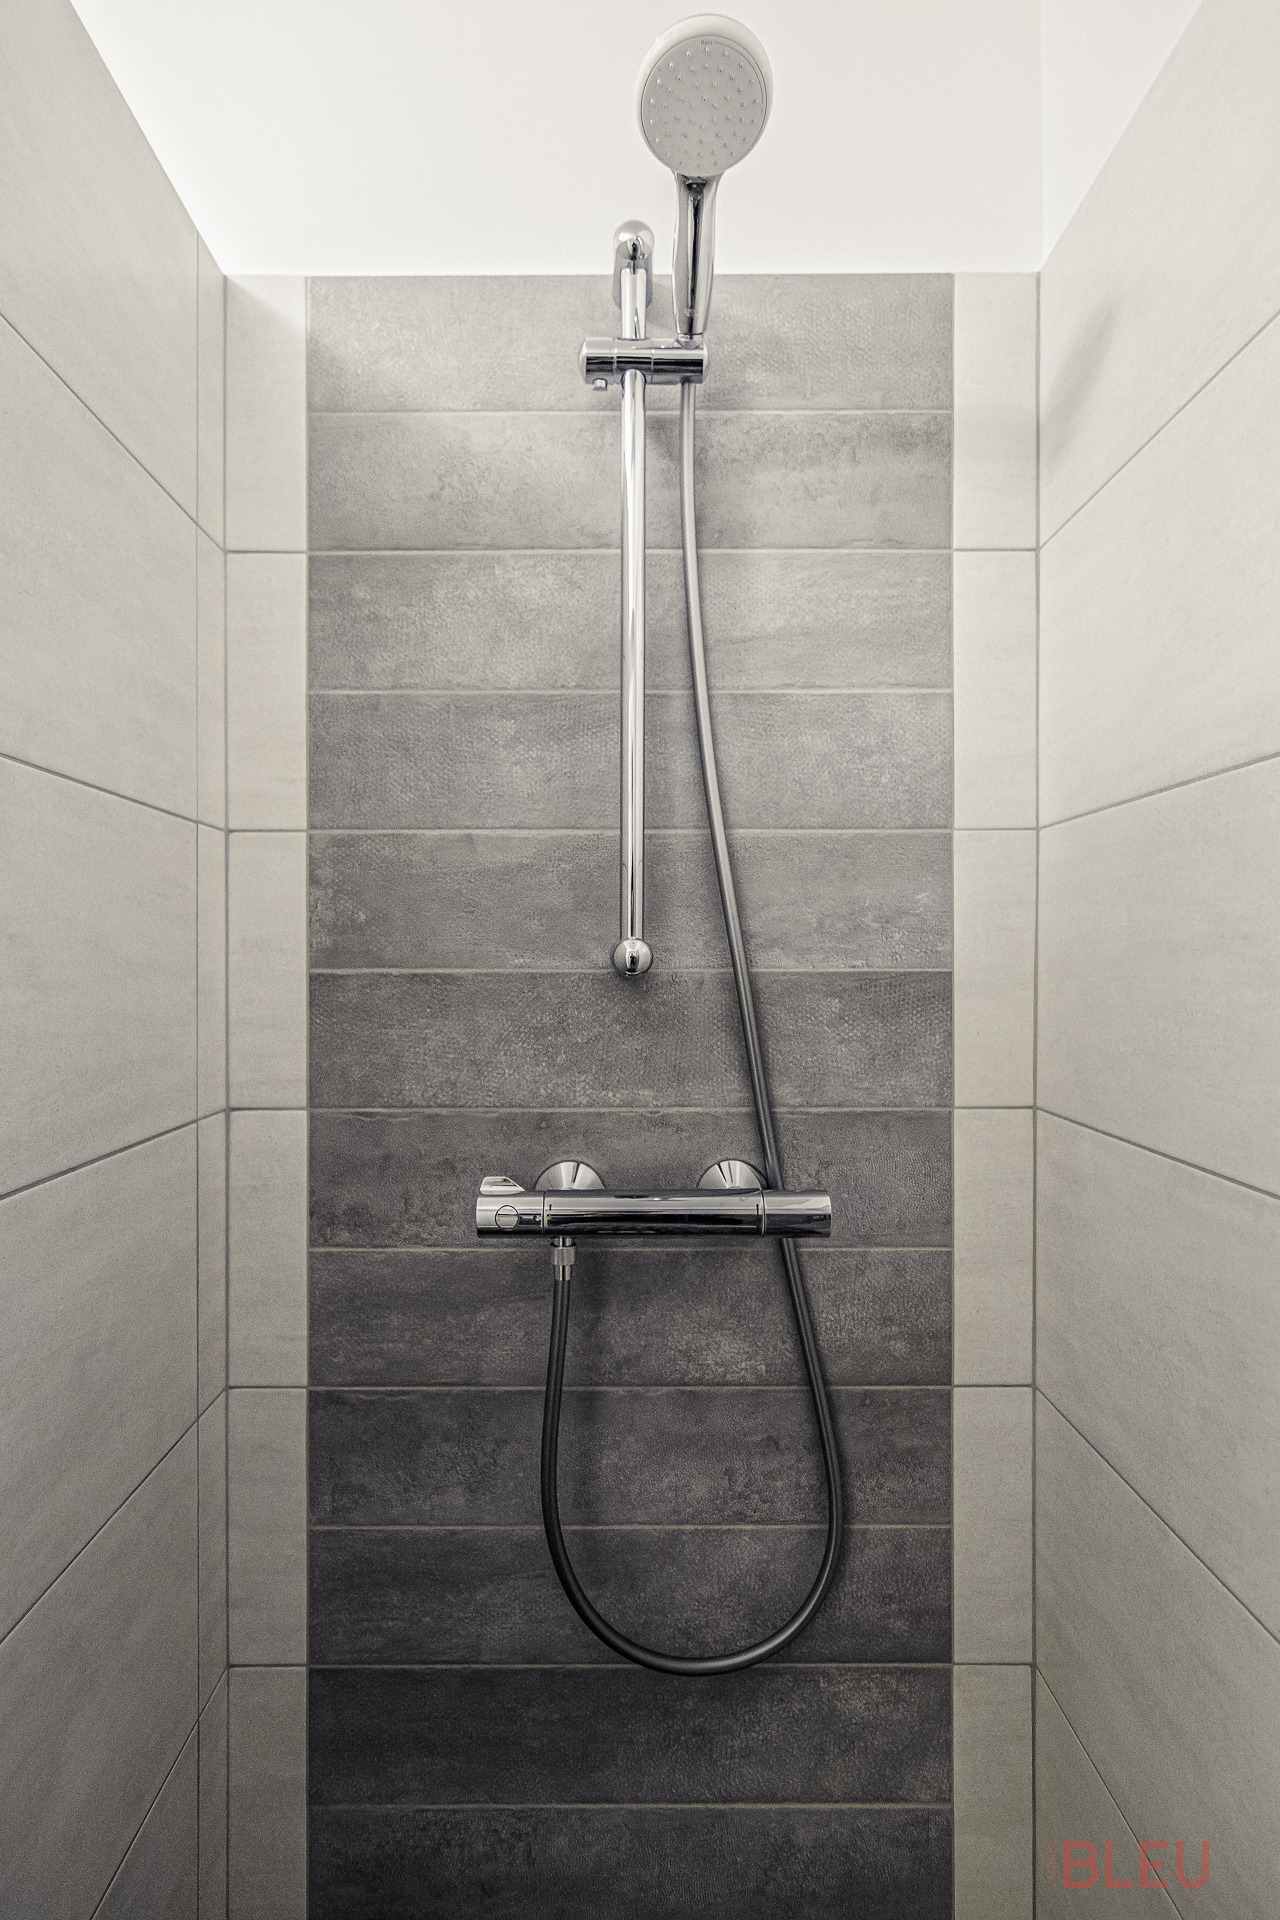 Une grande douche sur rehausse assure un confort optimal avec ses dimensions de 75 cm par 110 cm. Équipée d'une colonne de douche et d'une ventilation, elle offre tous les agréments nécessaires pour les habitants de l'appartement.